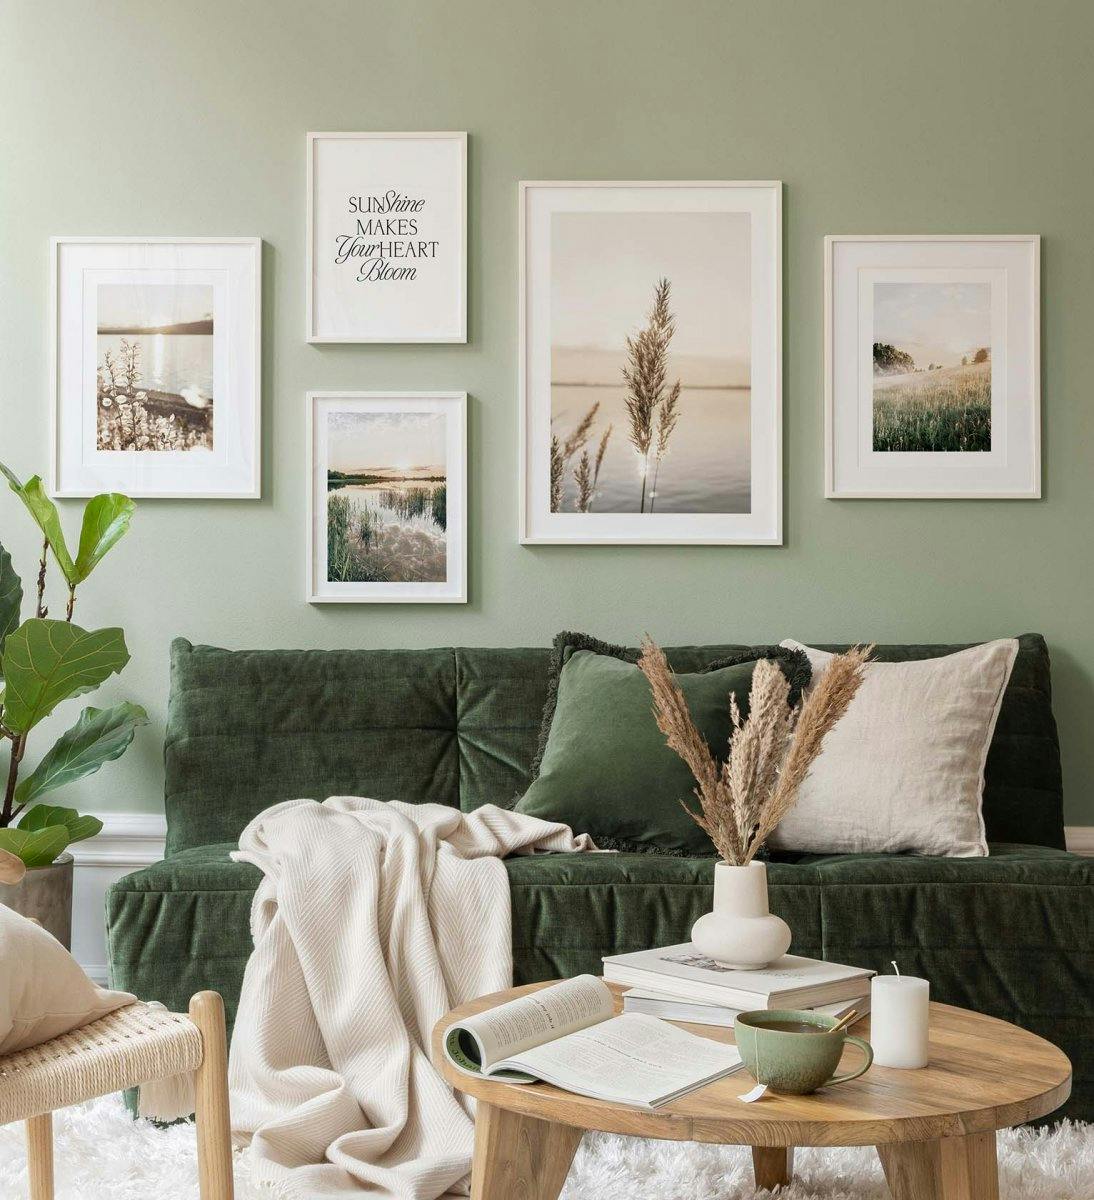 Landskap fotografi av grønt tema skaper en fredelig følelse i stuen